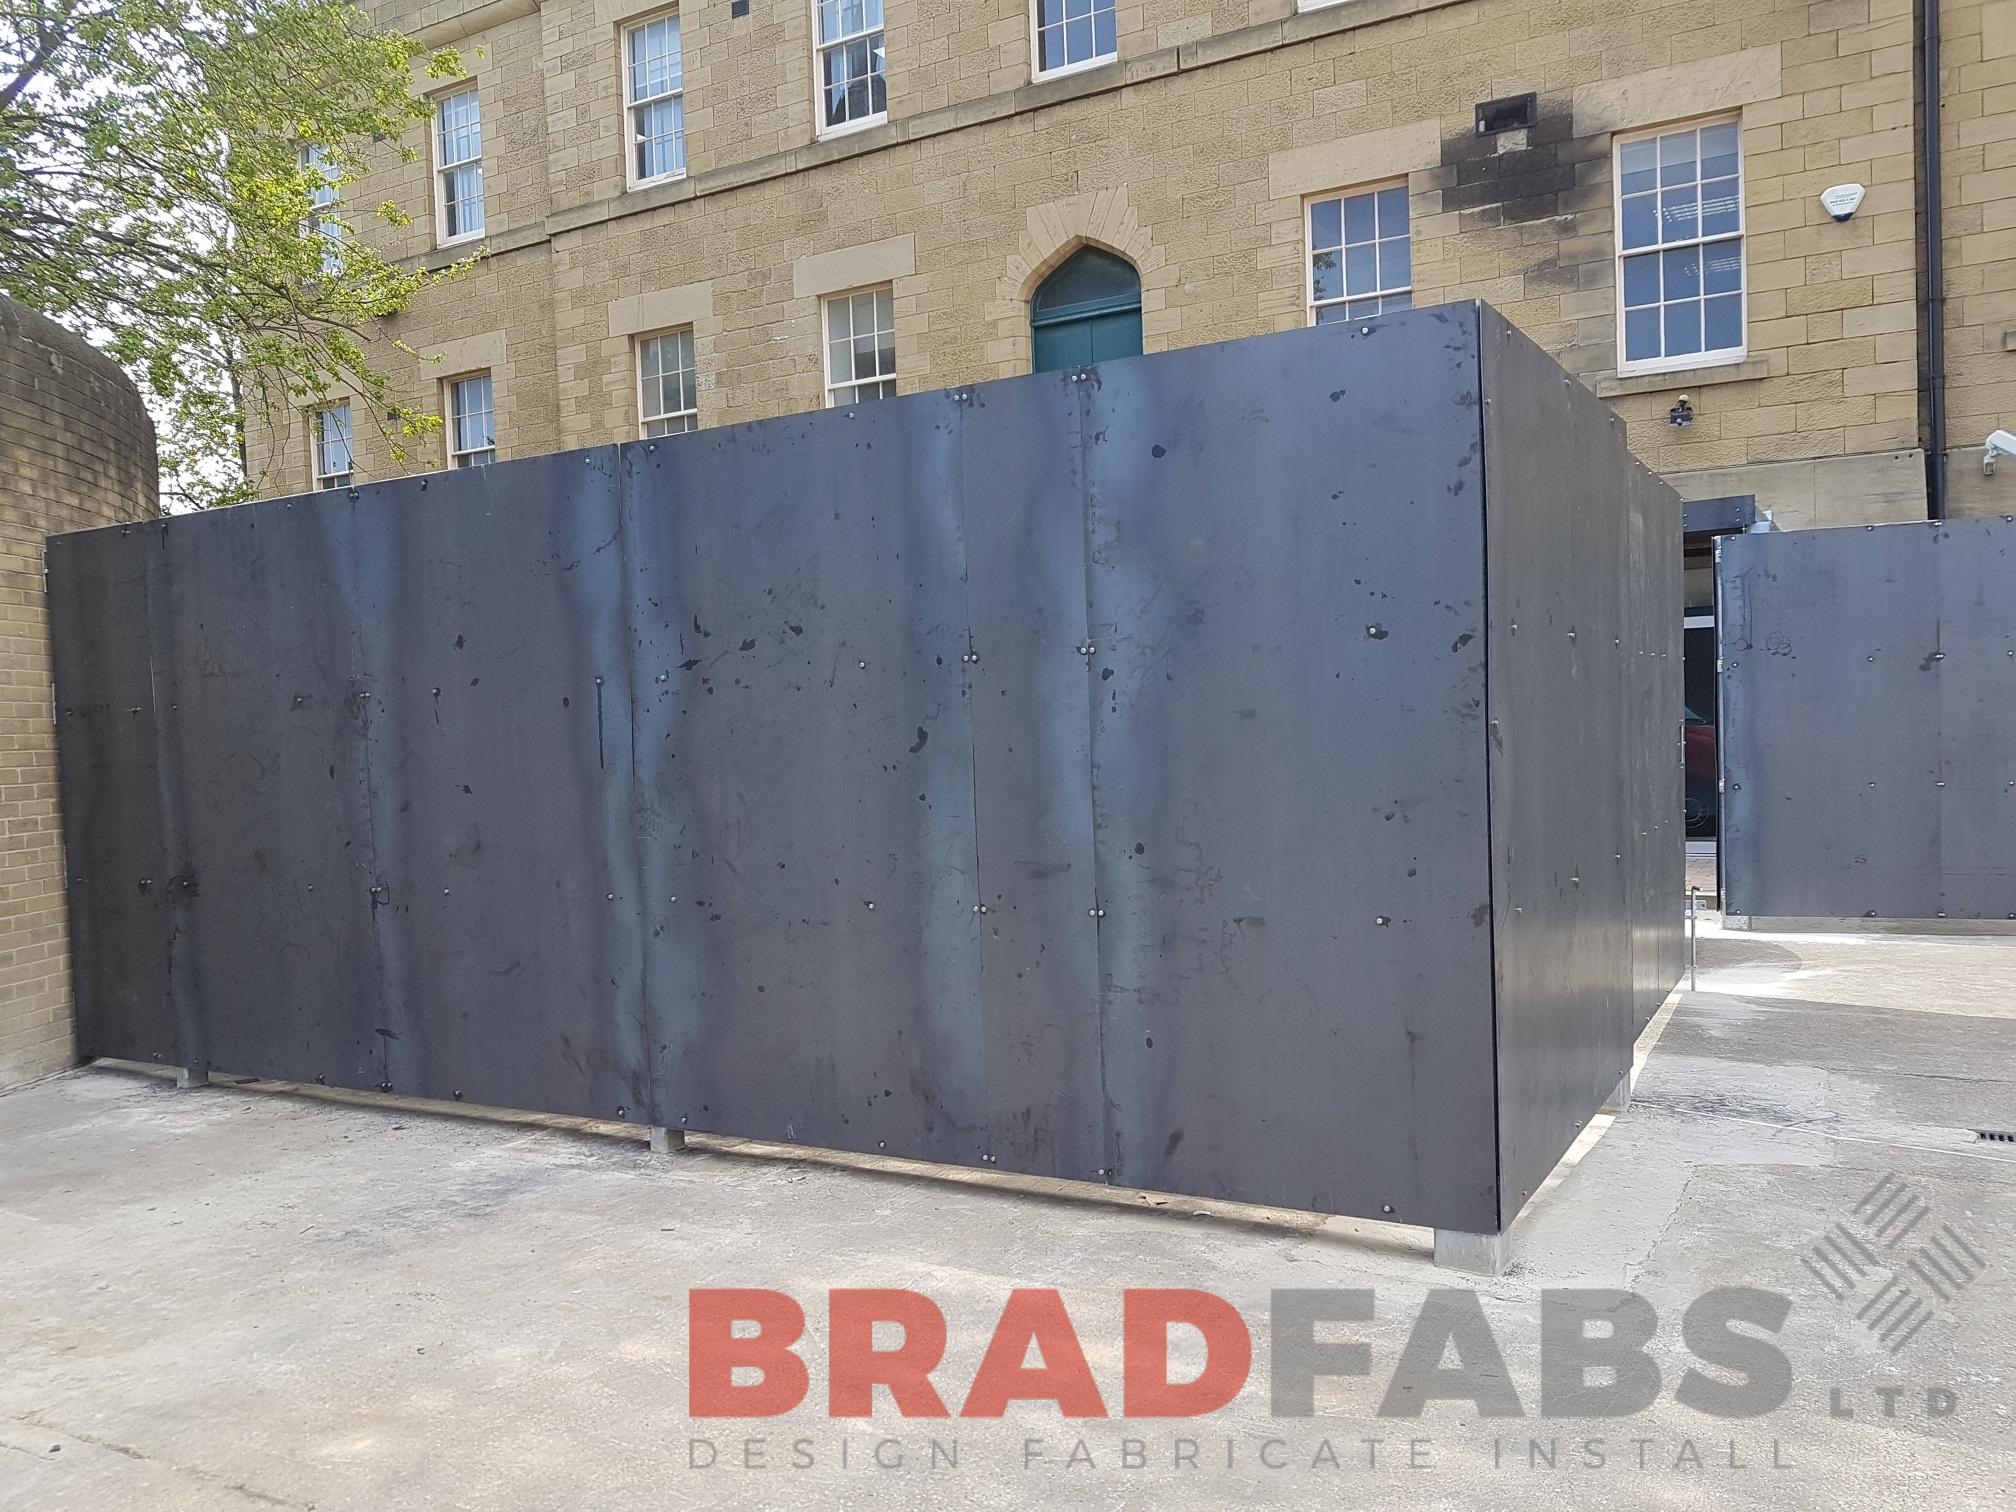 bespoke corten steel also known as weathered steel compound barrier by Bradfabs Ltd 